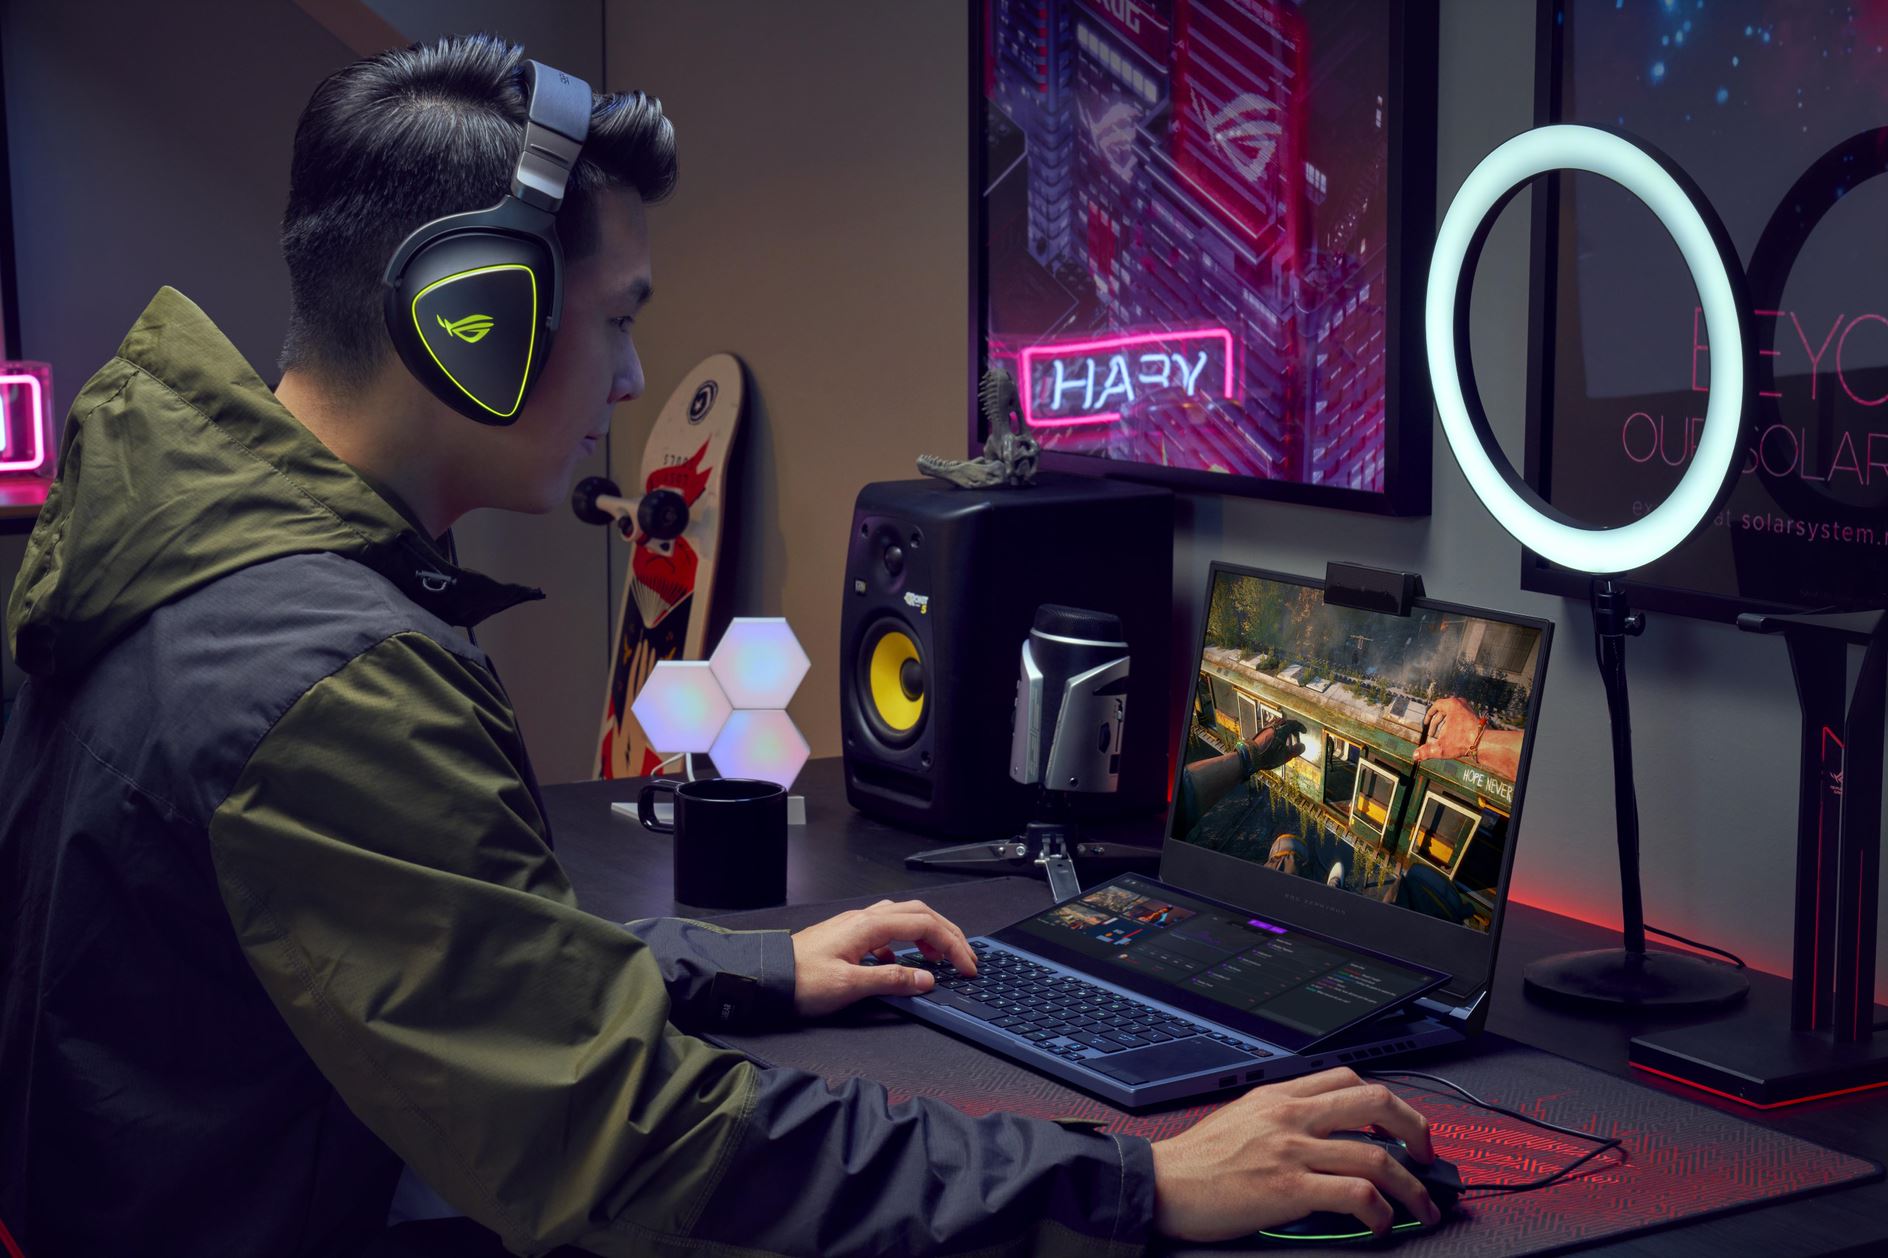 Asus ROG Zephyrus Duo ra mắt: Laptop gaming với hai màn hình, chip Intel Core thế hệ 10, giá từ 2999 USD - Ảnh 2.